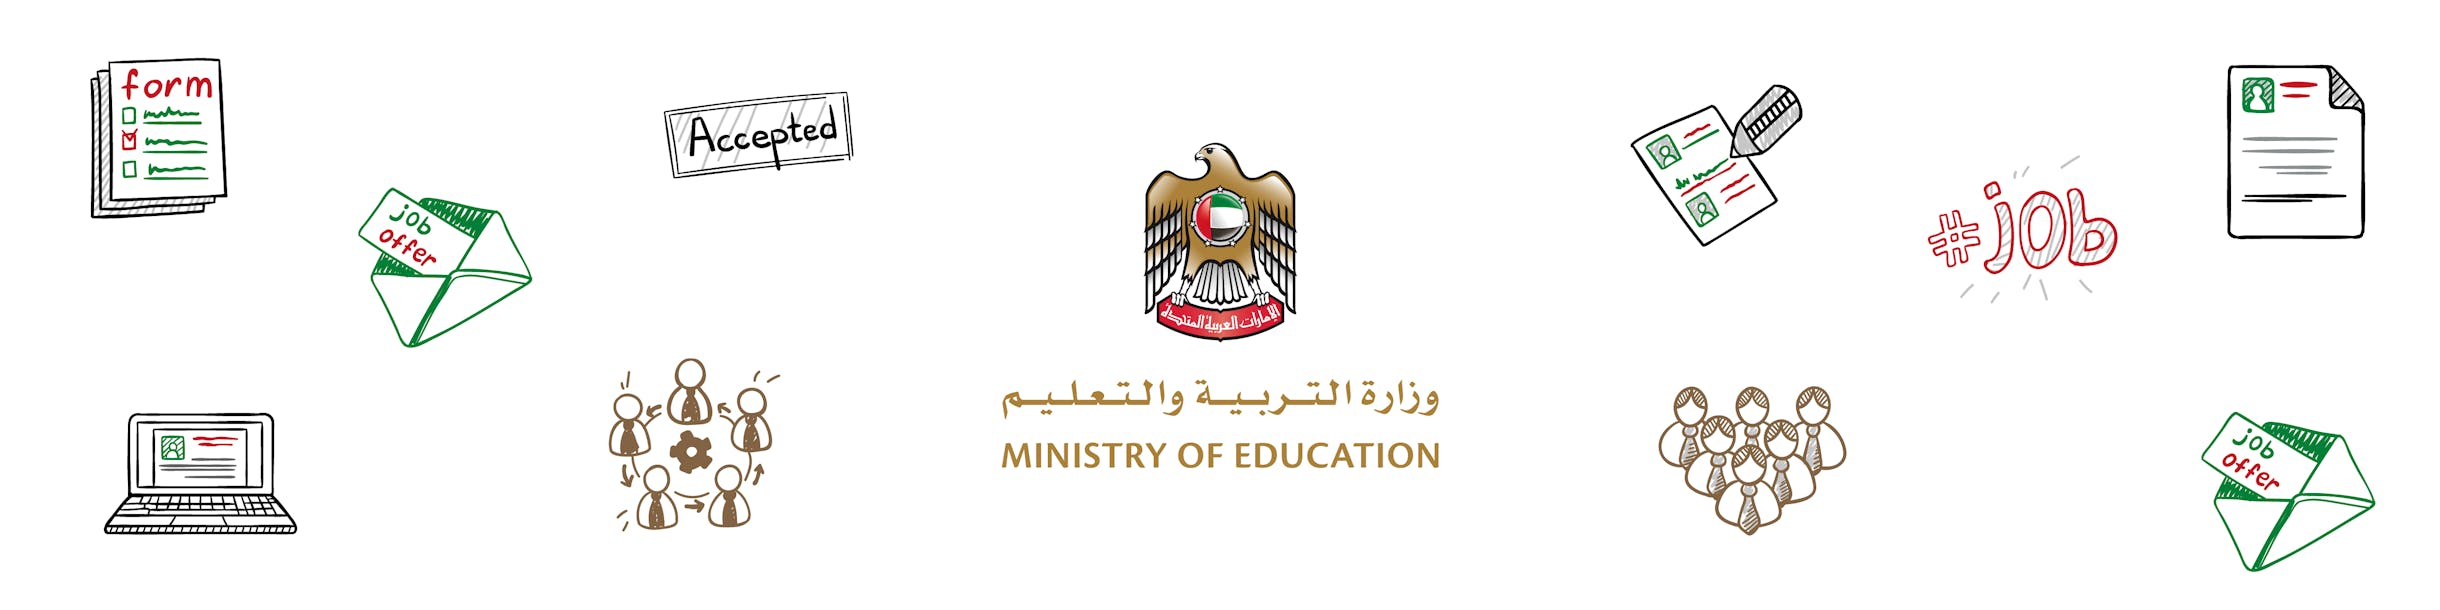 United Arab Emirates Ministry of Education